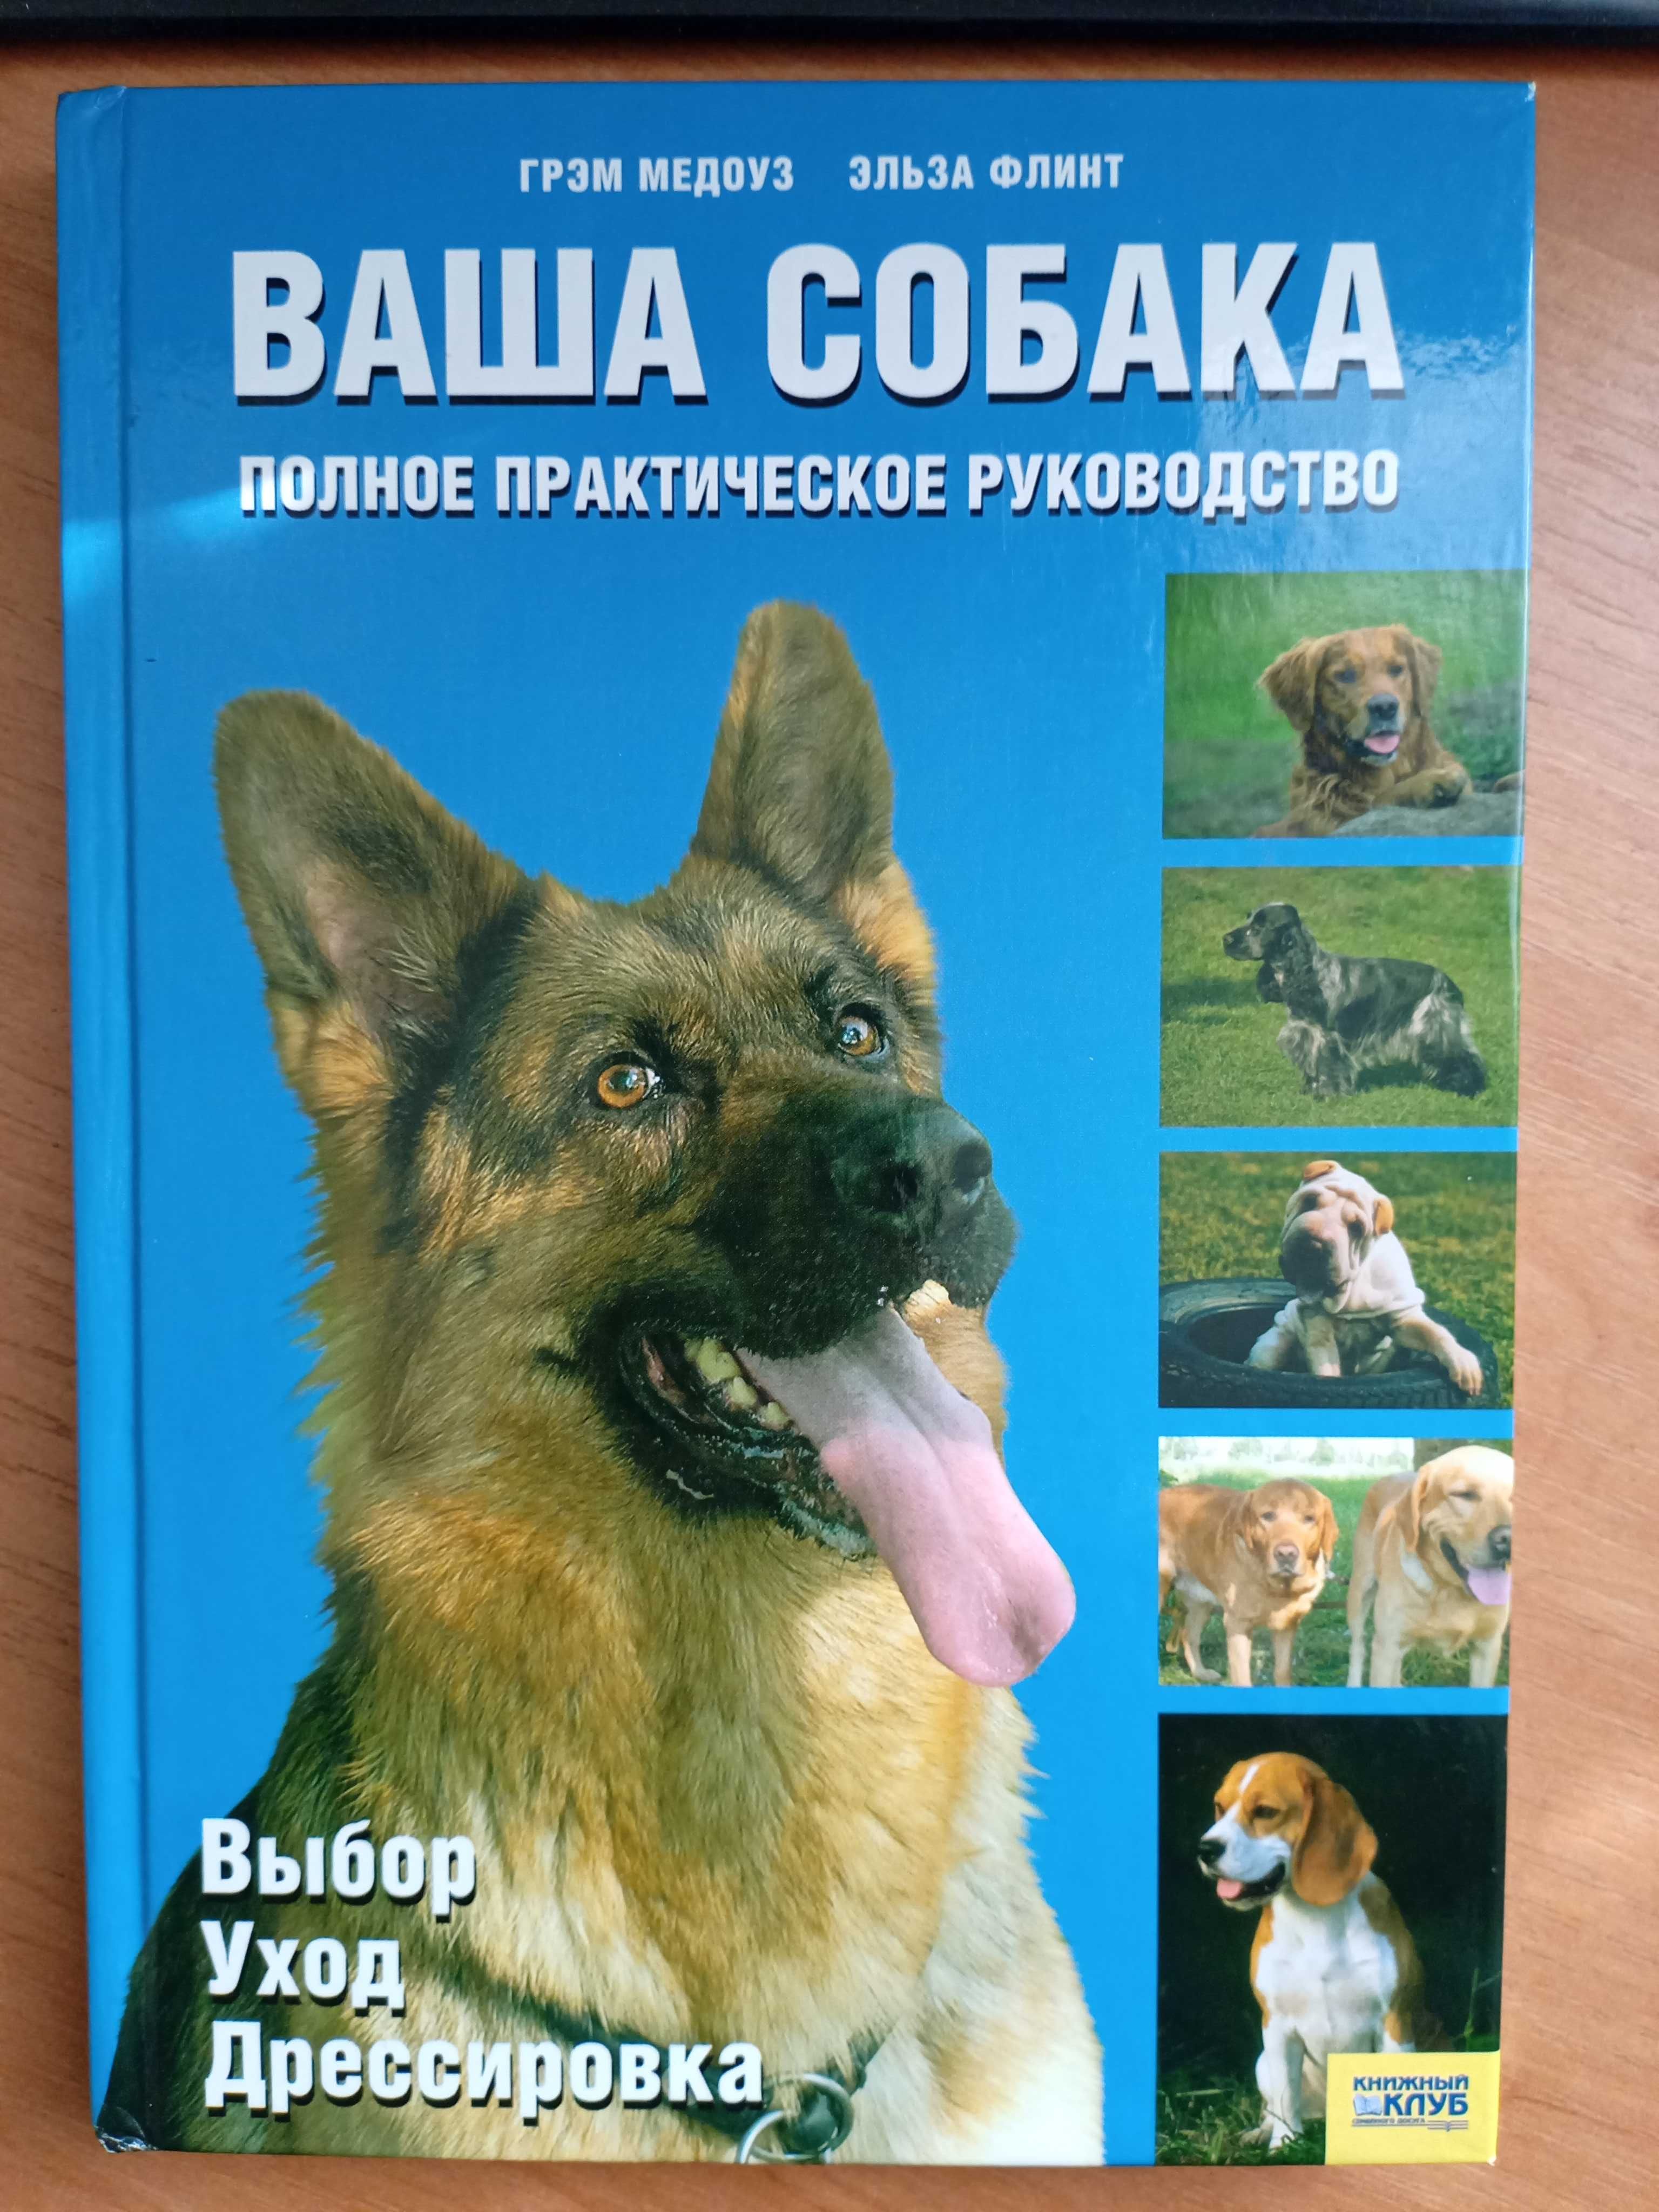 Книга  "Ваша собака"